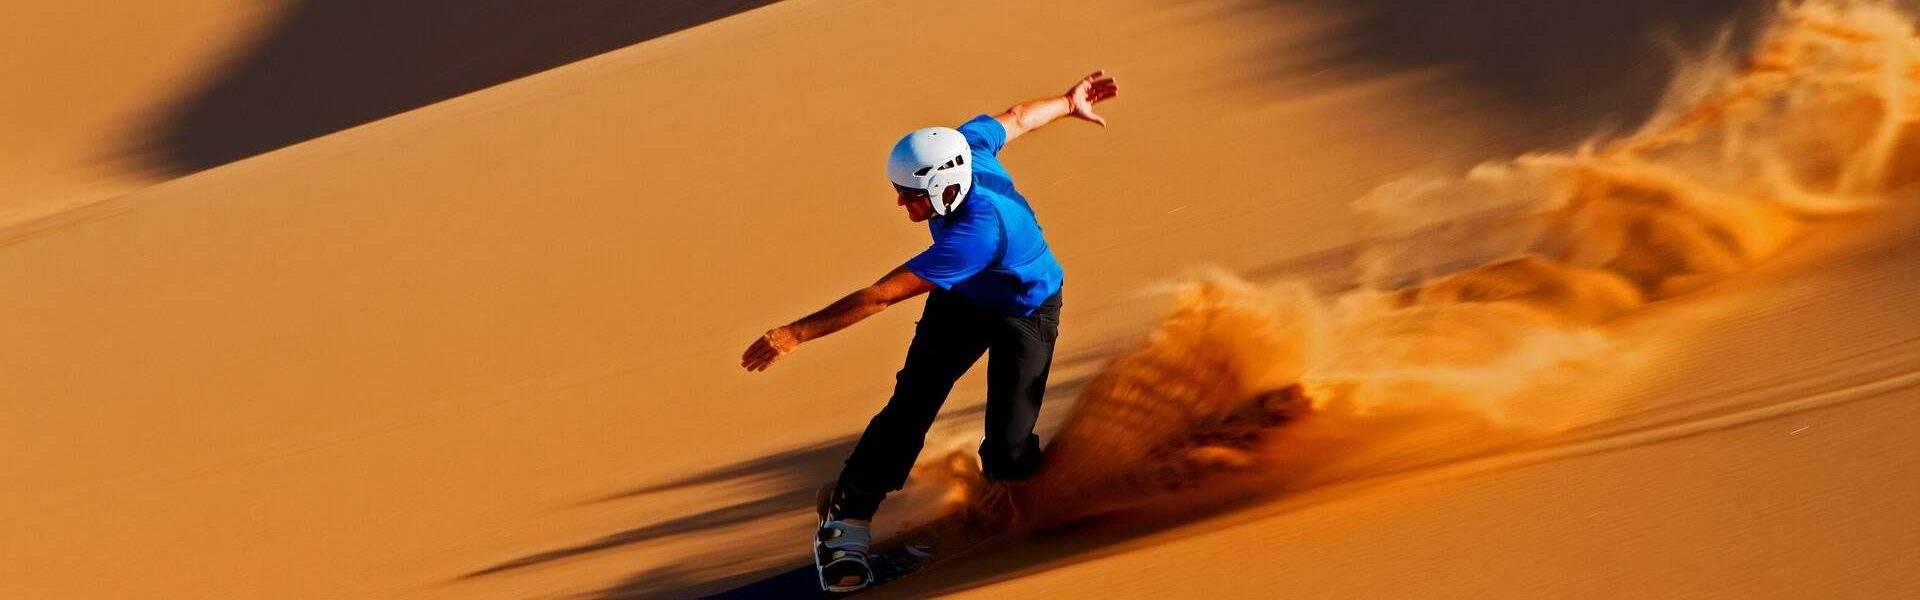 swakopmund namibia dunes sandboarding